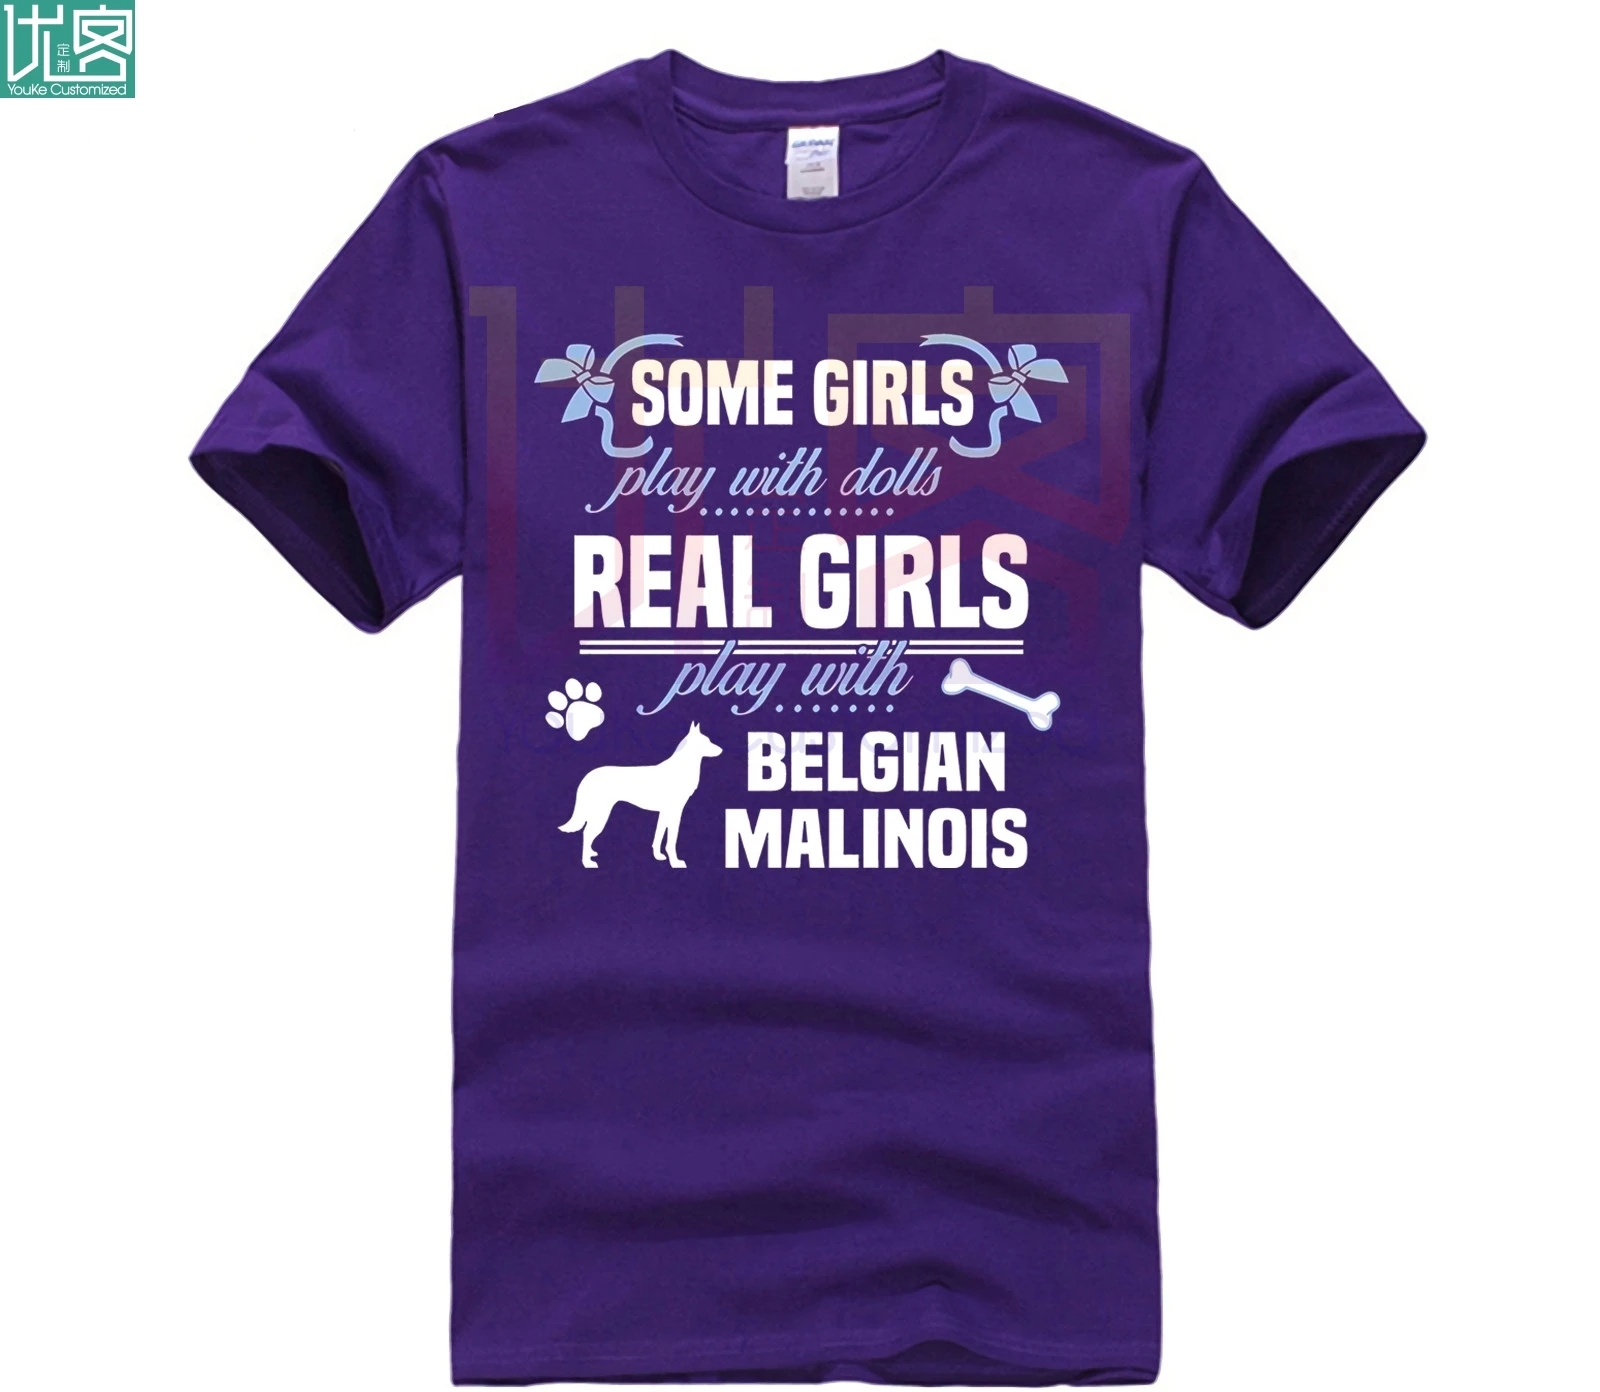 Brugerdefinerede trykt bomuld O-neck T-shirt Belgiske Malinois T-shirt Nogle drenge lege med dukker Real 3